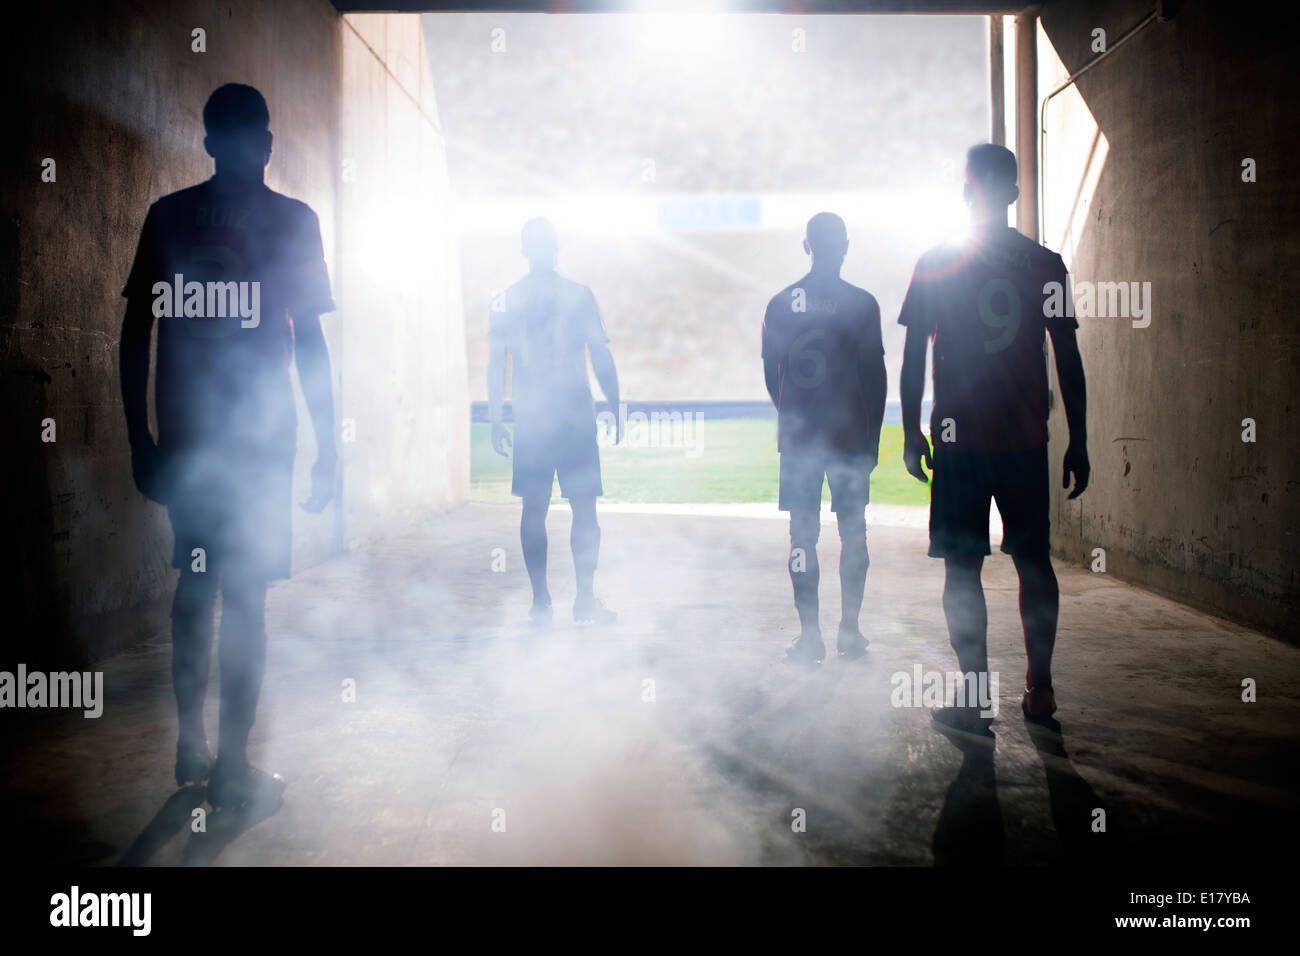 Silhouette d'équipes de football champ face Banque D'Images